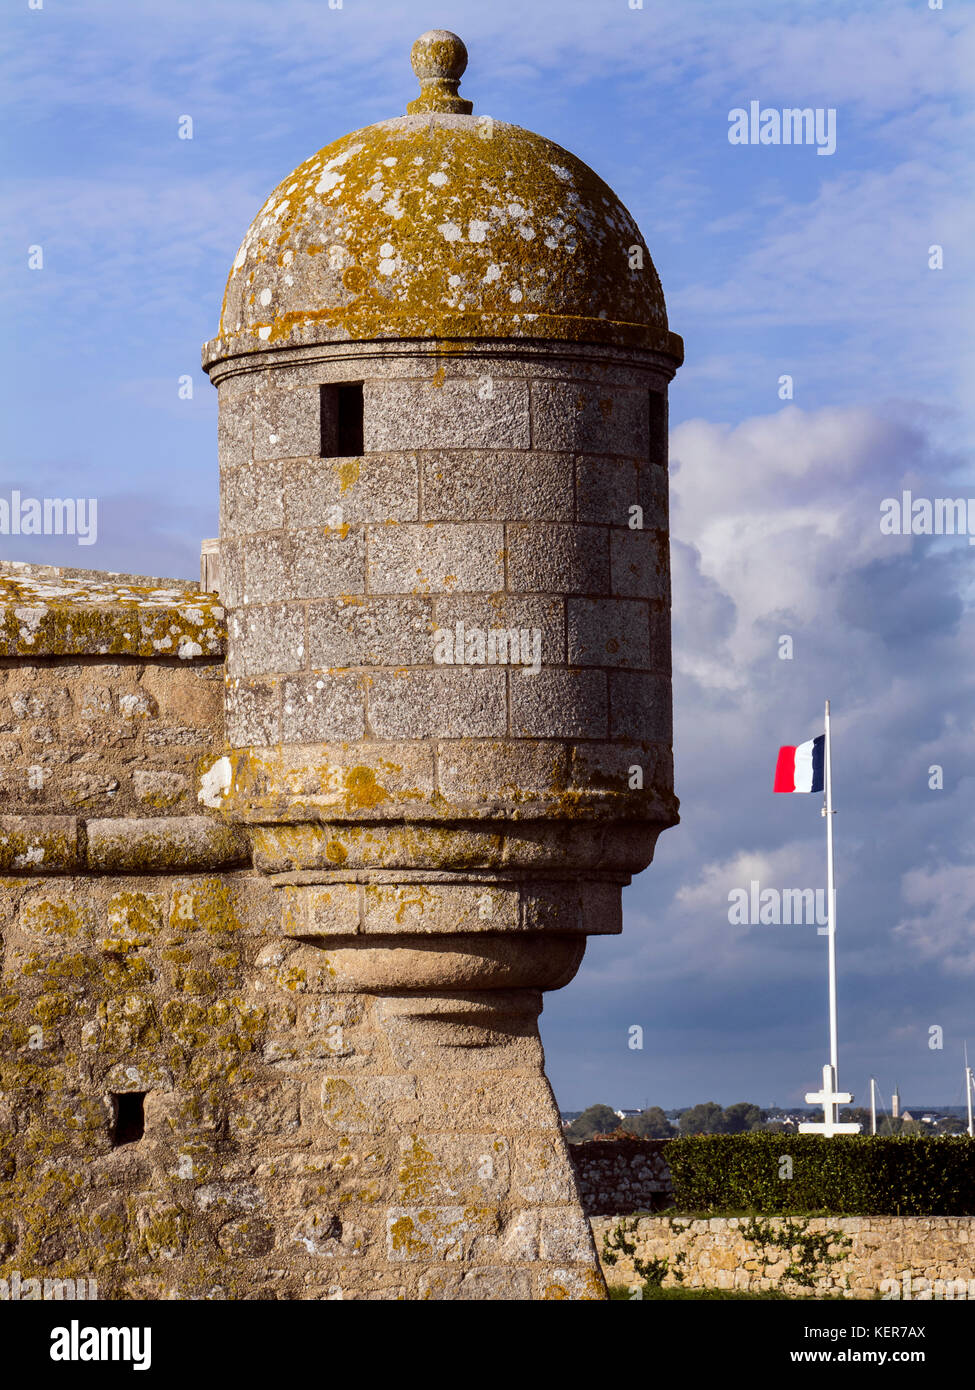 Fort grand entrée de la Citadelle La Citadelle / une région côtière en forme d'étoiles historique fort, construit en 1591 à Port-louis, Lorient, Bretagne France Banque D'Images